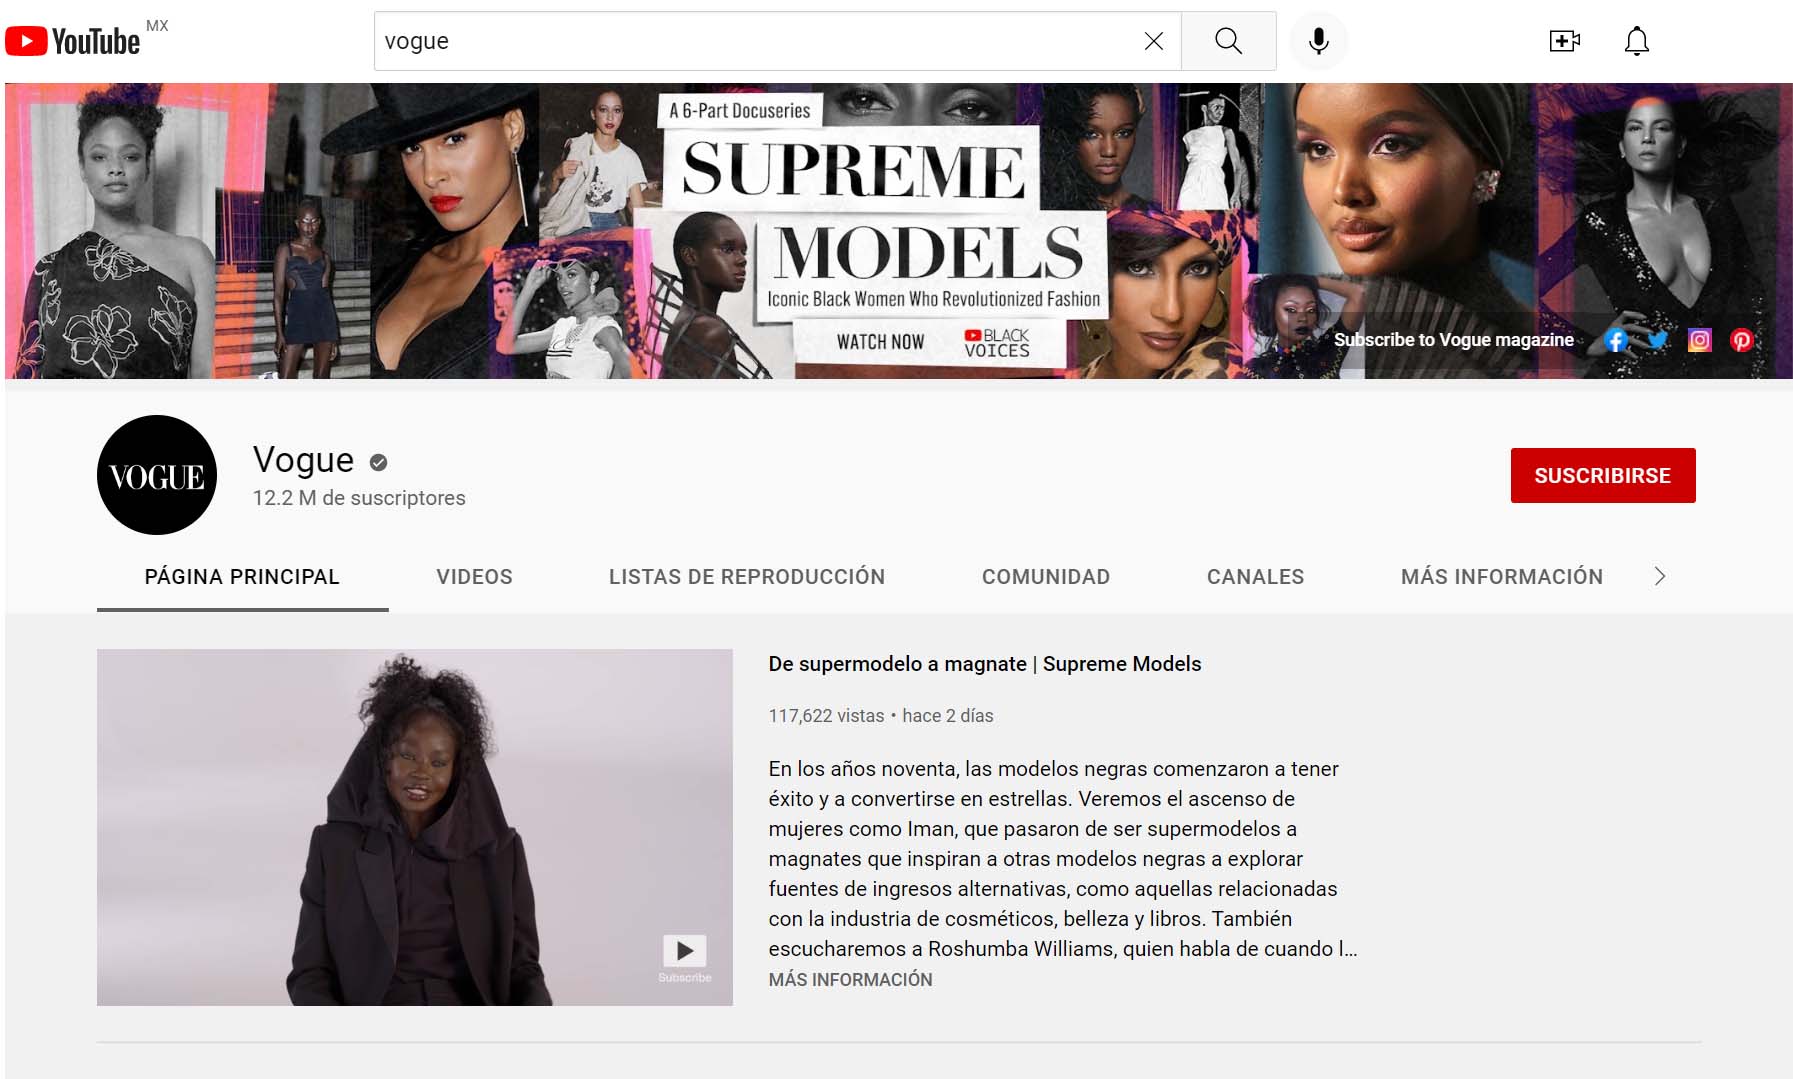 banners de YouTube - ejemplo: Vogue